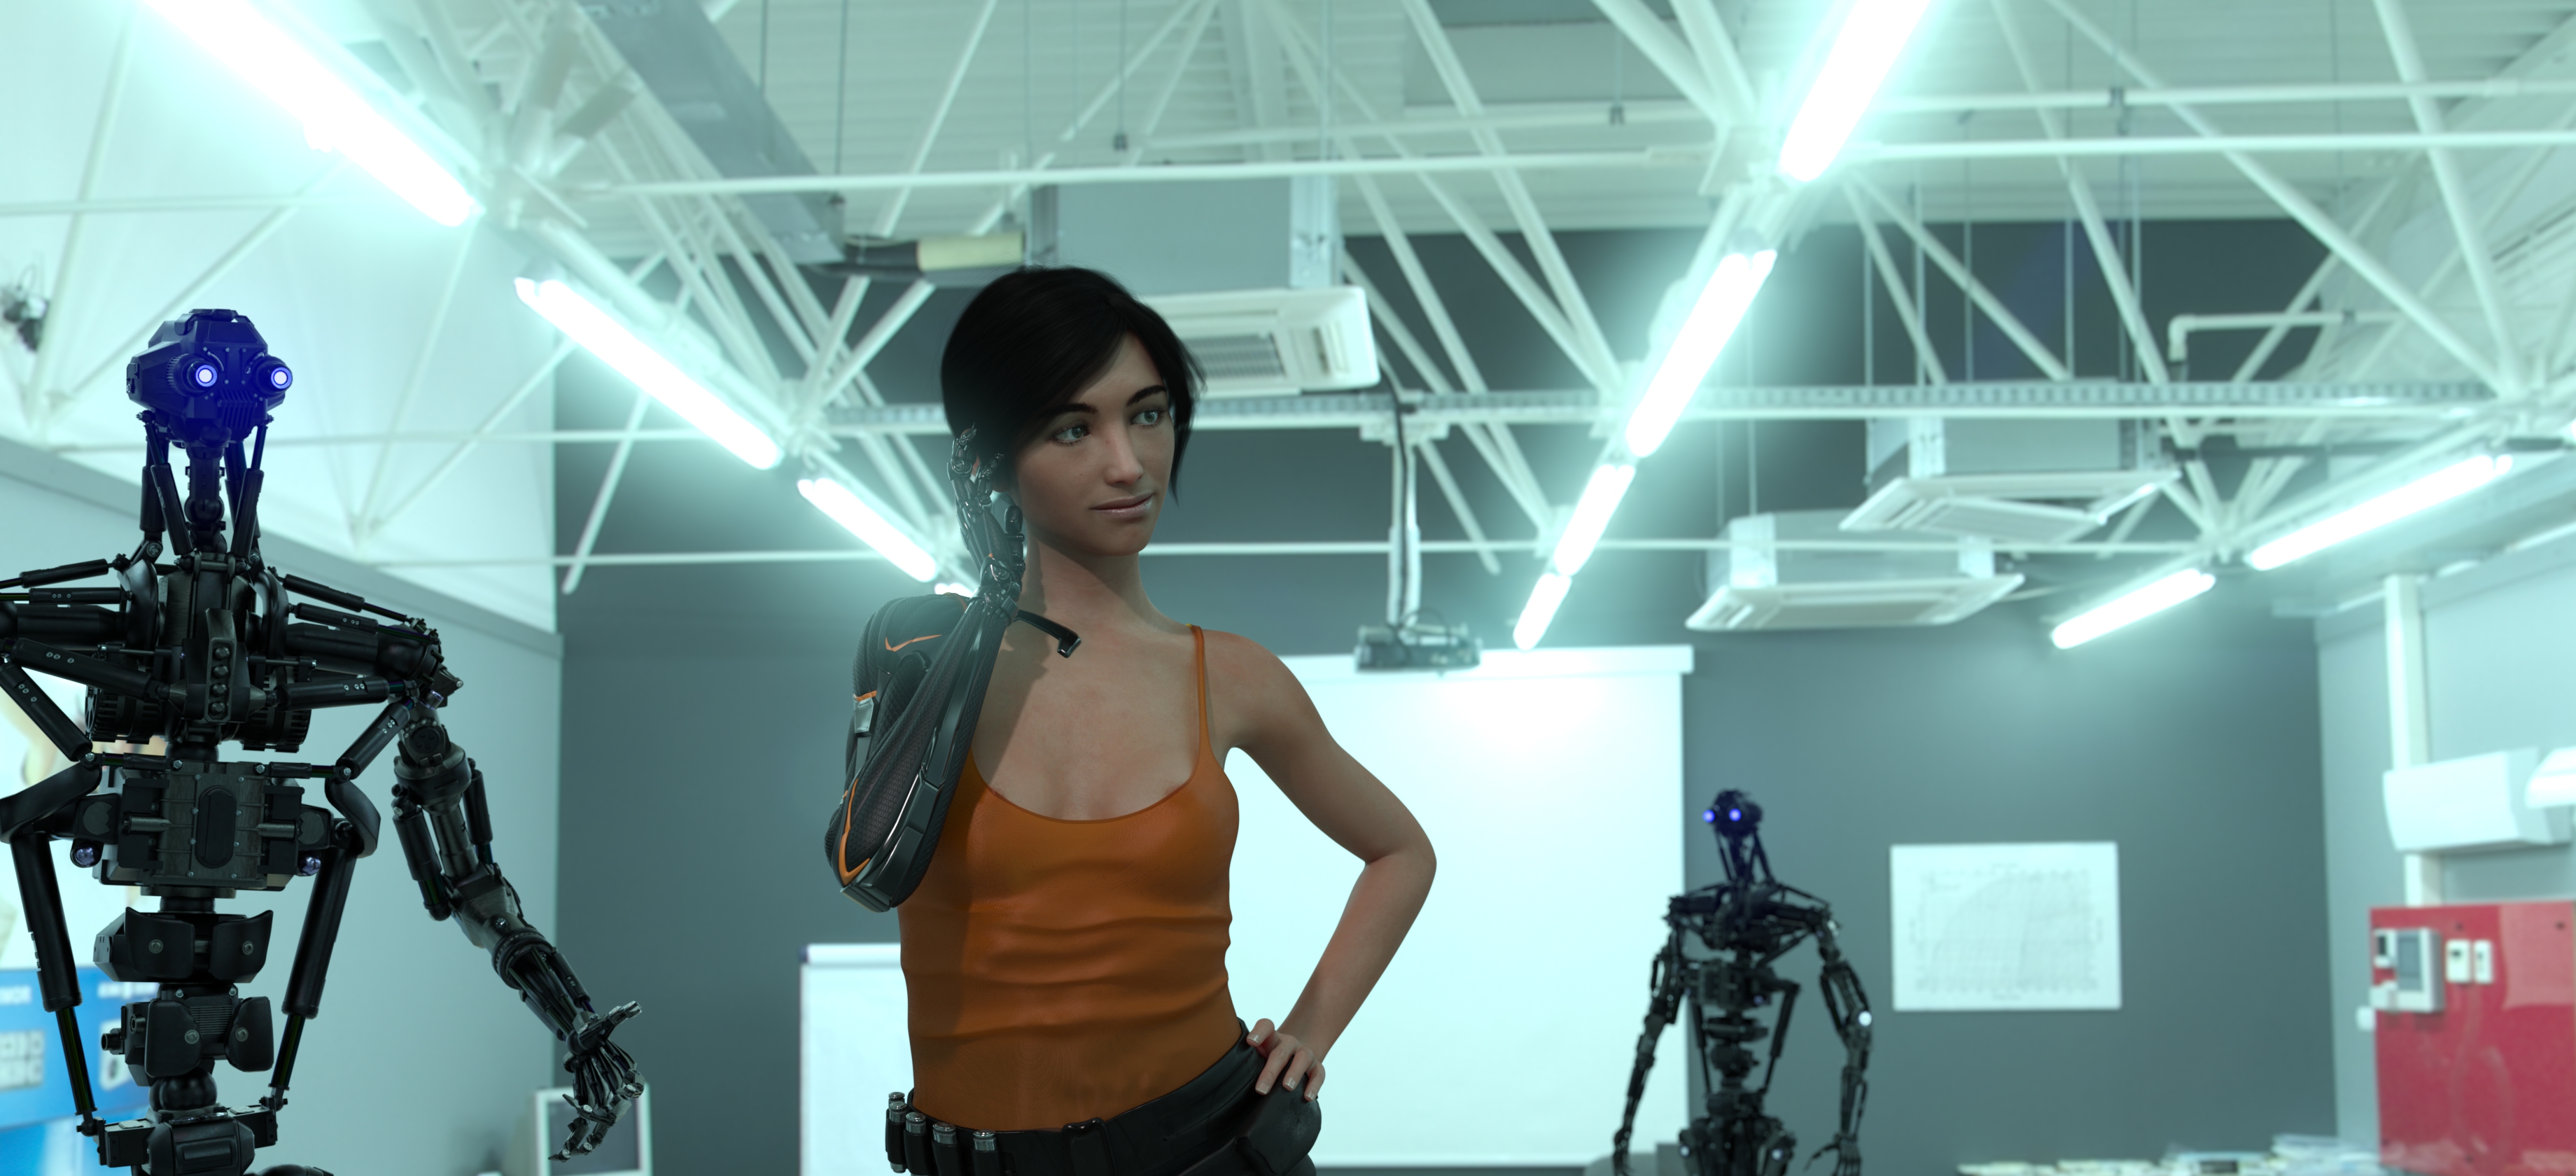 Бесплатное фото Сакира Родаун в короткометражном фильме "Кибершик" во время ориентации после восстановления с роботами-инструкторами.